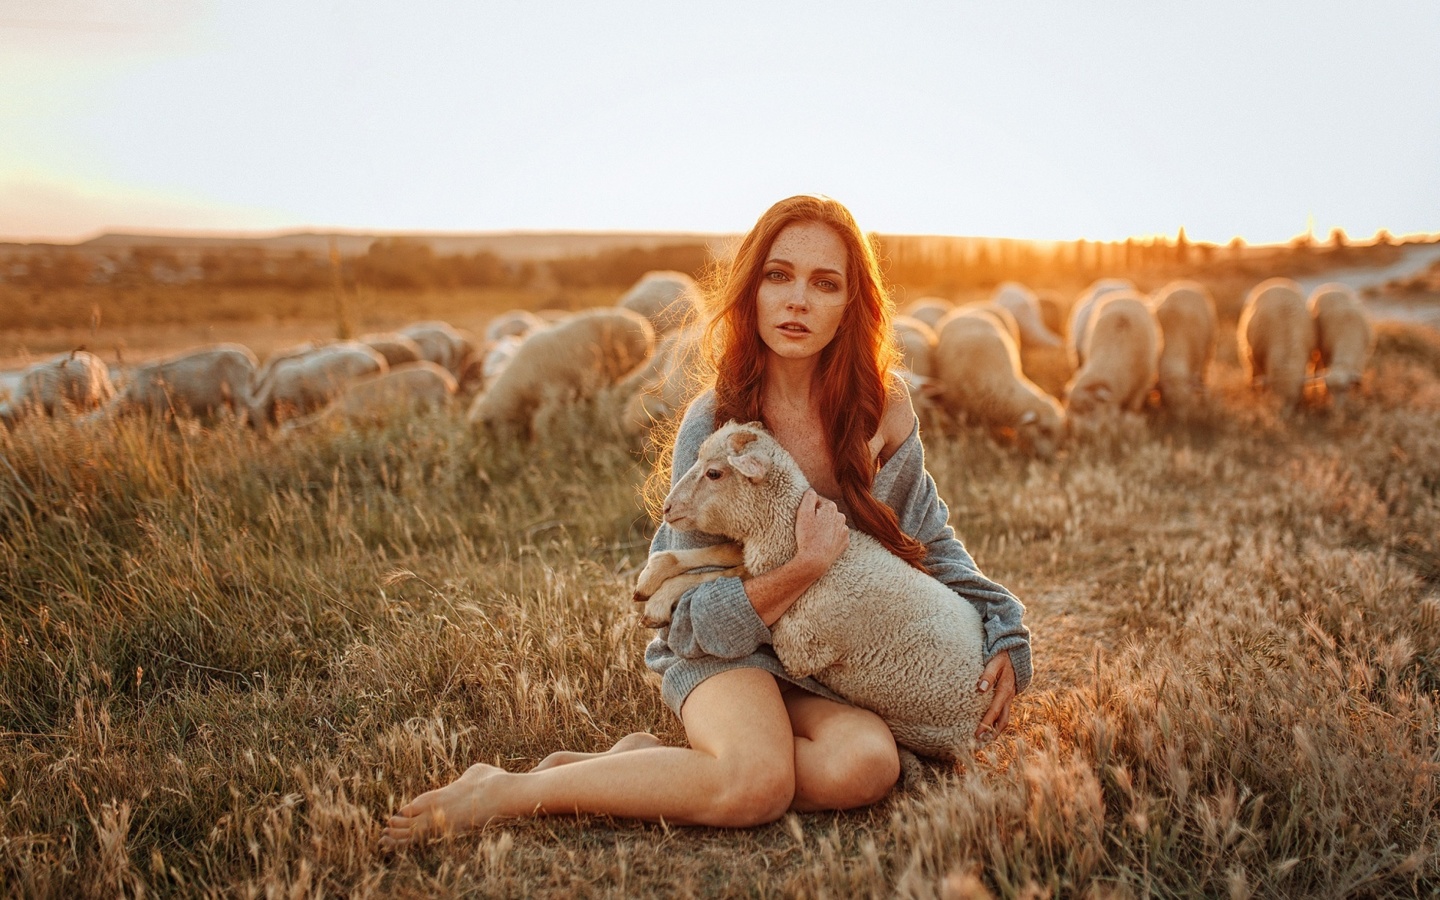 Обои Girl with Sheep 1440x900